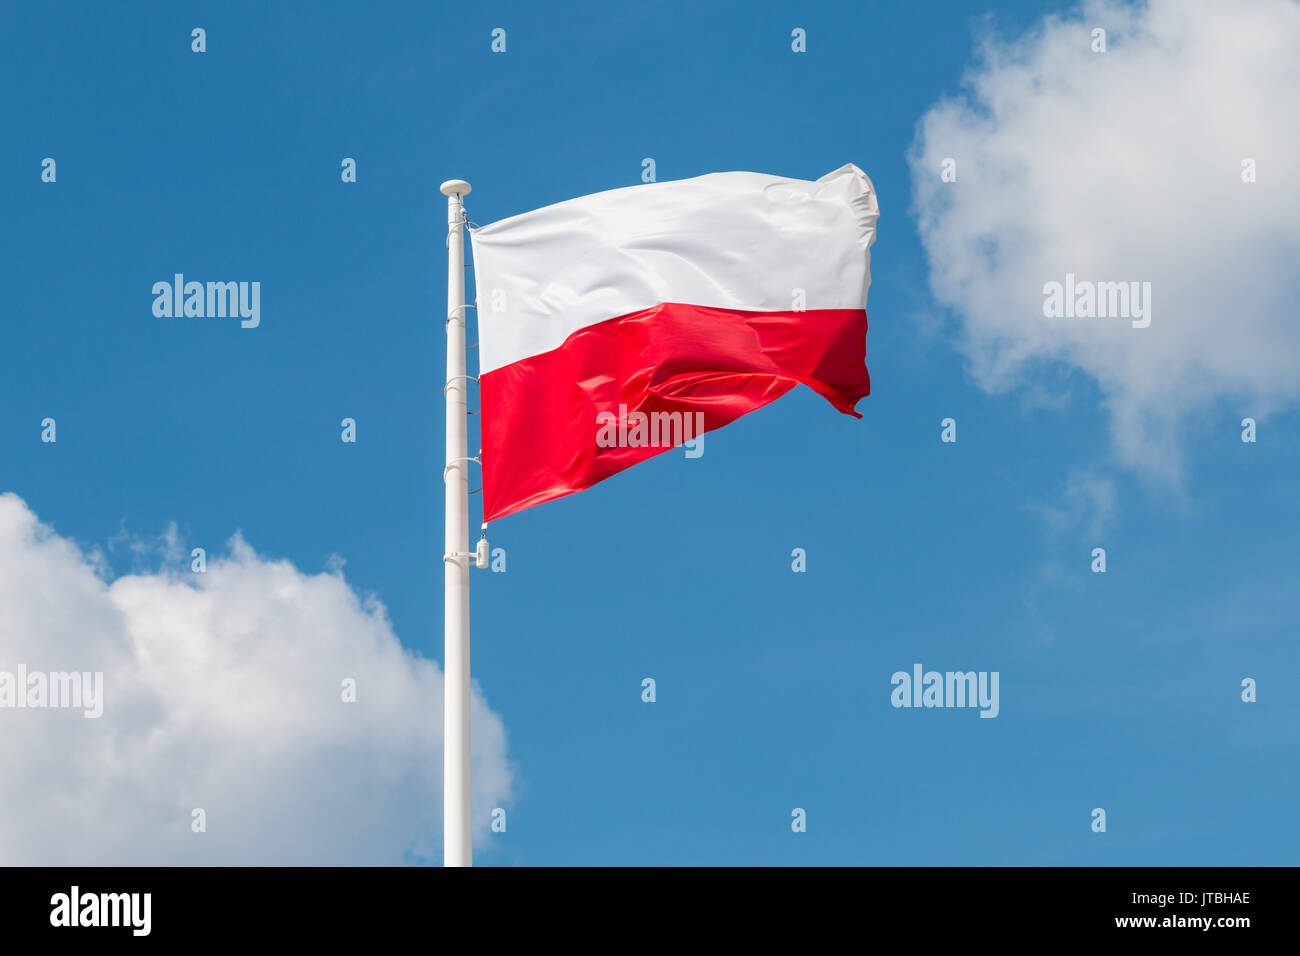 Brandissant le drapeau national de la Pologne sur un mât, couleurs nationales de la Pologne. Banque D'Images